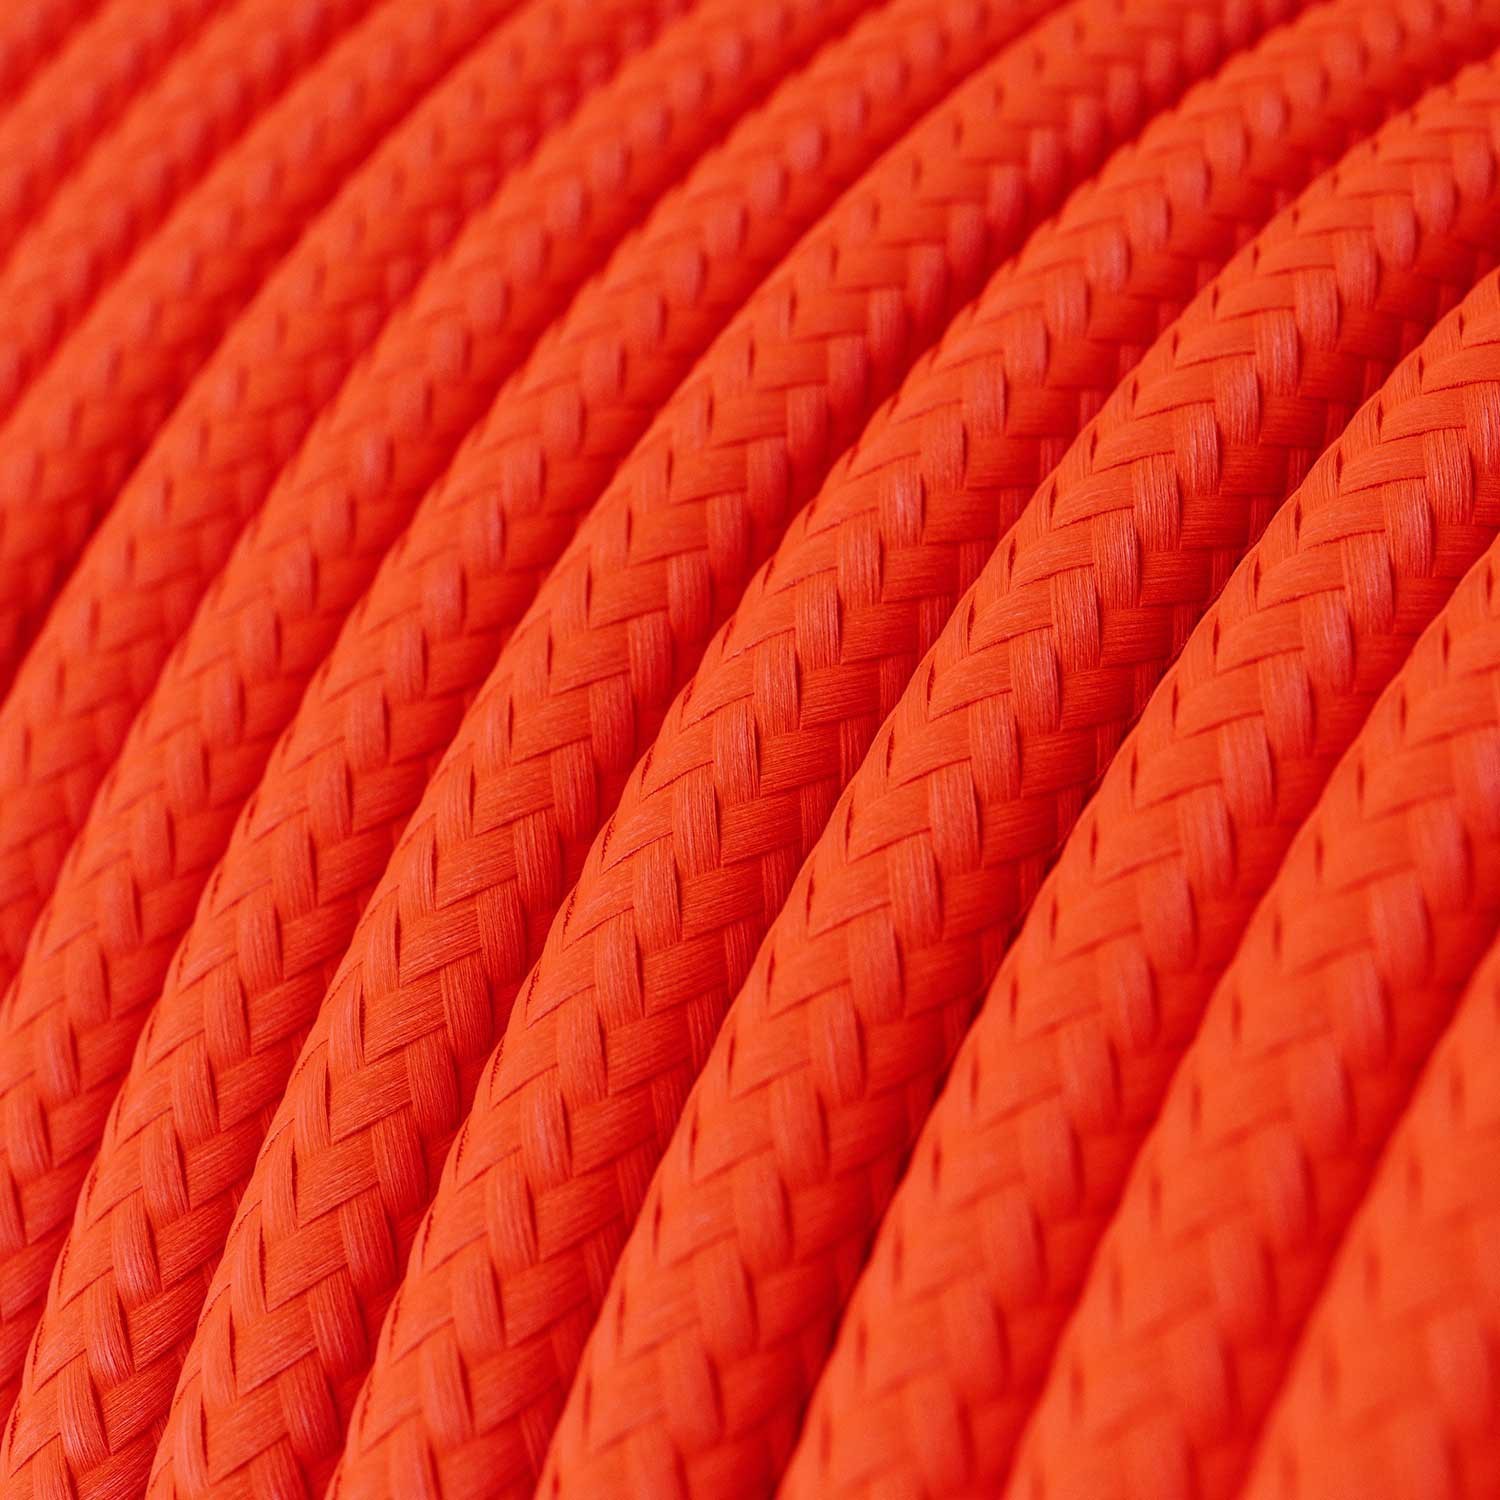 Okrúhly textilný elektrický kábel, umelý hodváb, jednofarebný, RF15 Fluo oranžová